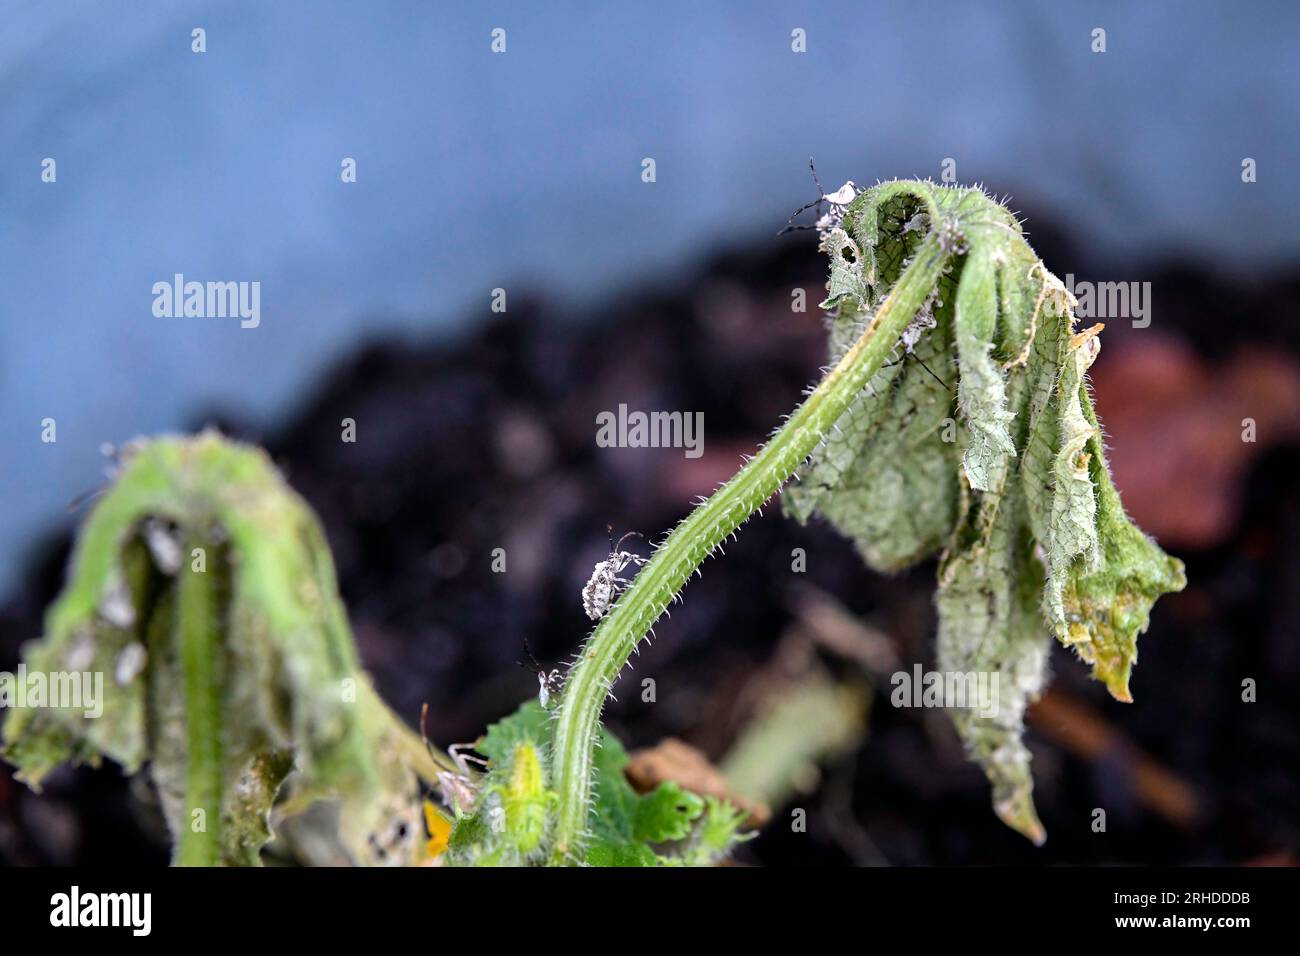 Primo piano dell'infestazione da insetti e dei danni su una pianta di cetriolo morente. Foto Stock